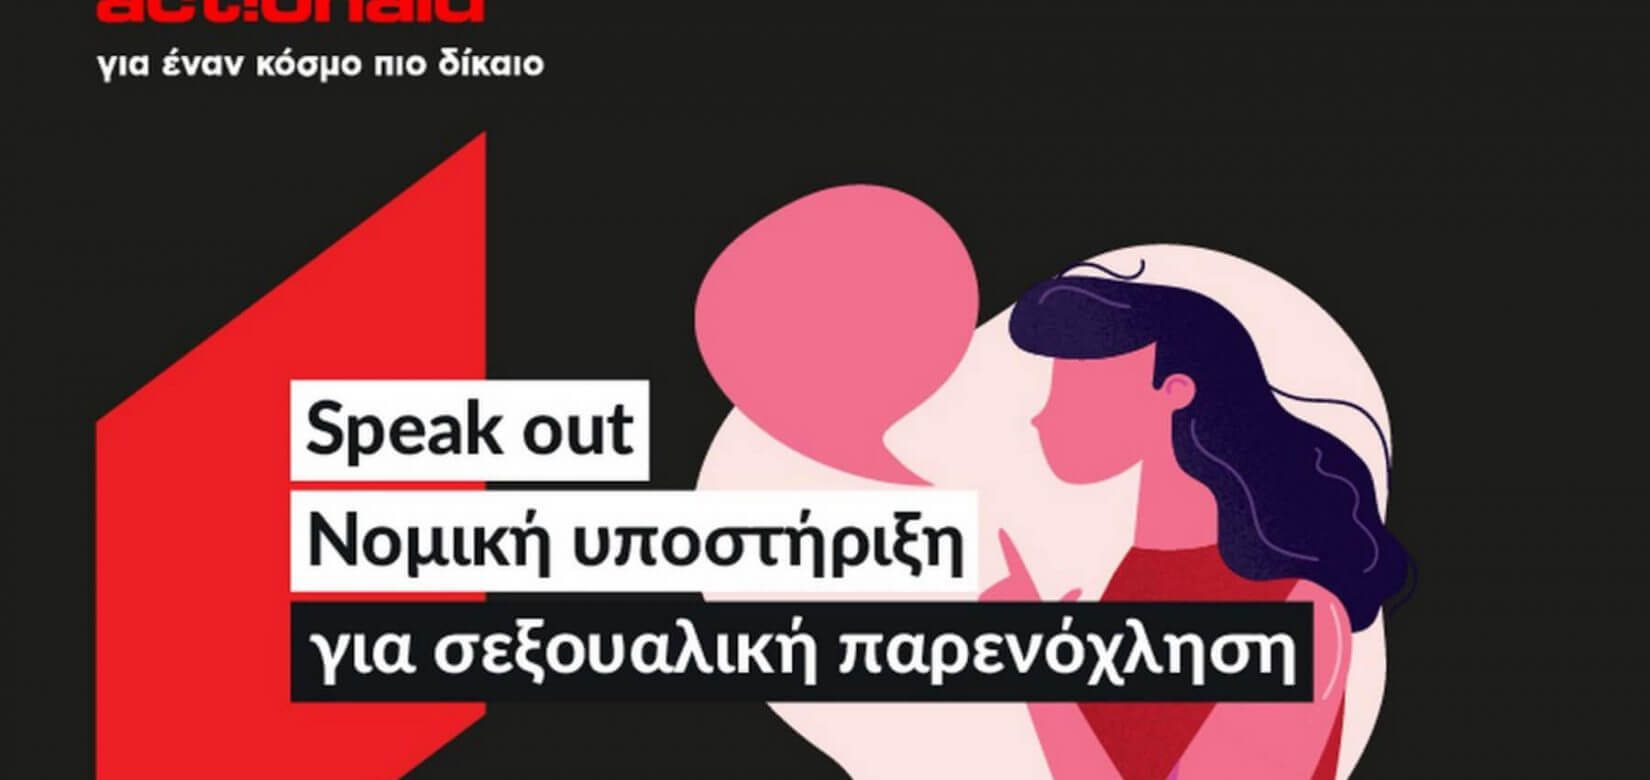 Σεξουαλική παρενόχληση στην εργασία; Νομικές συμβουλές για γυναίκες δωρεάν